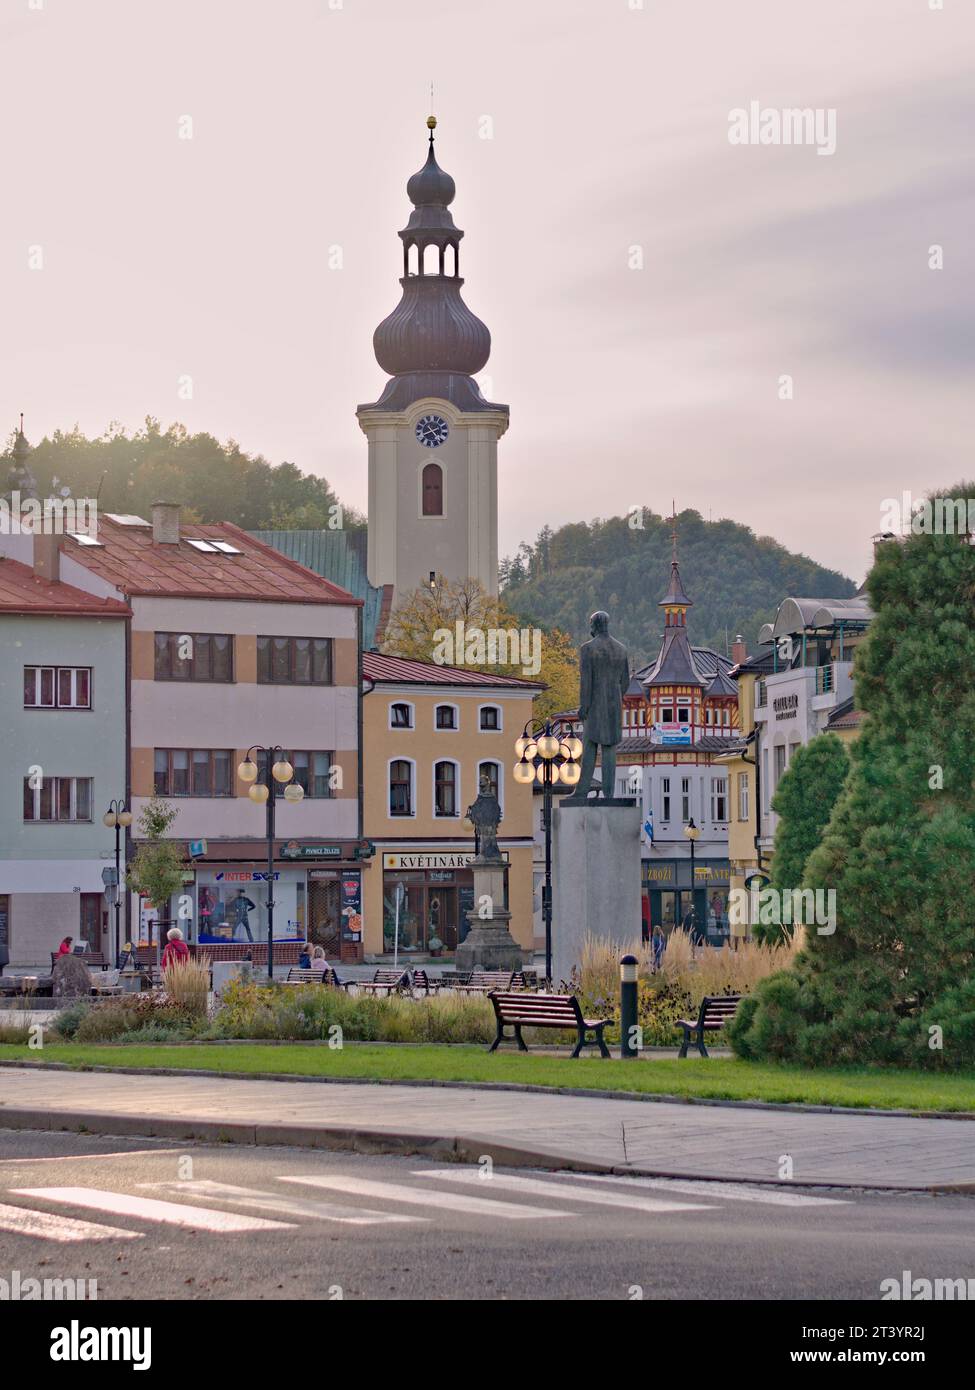 Place Roznov pod Radhostem et église dans le centre-ville. Célèbre destination touristique de la république tchèque. Automne. Banque D'Images